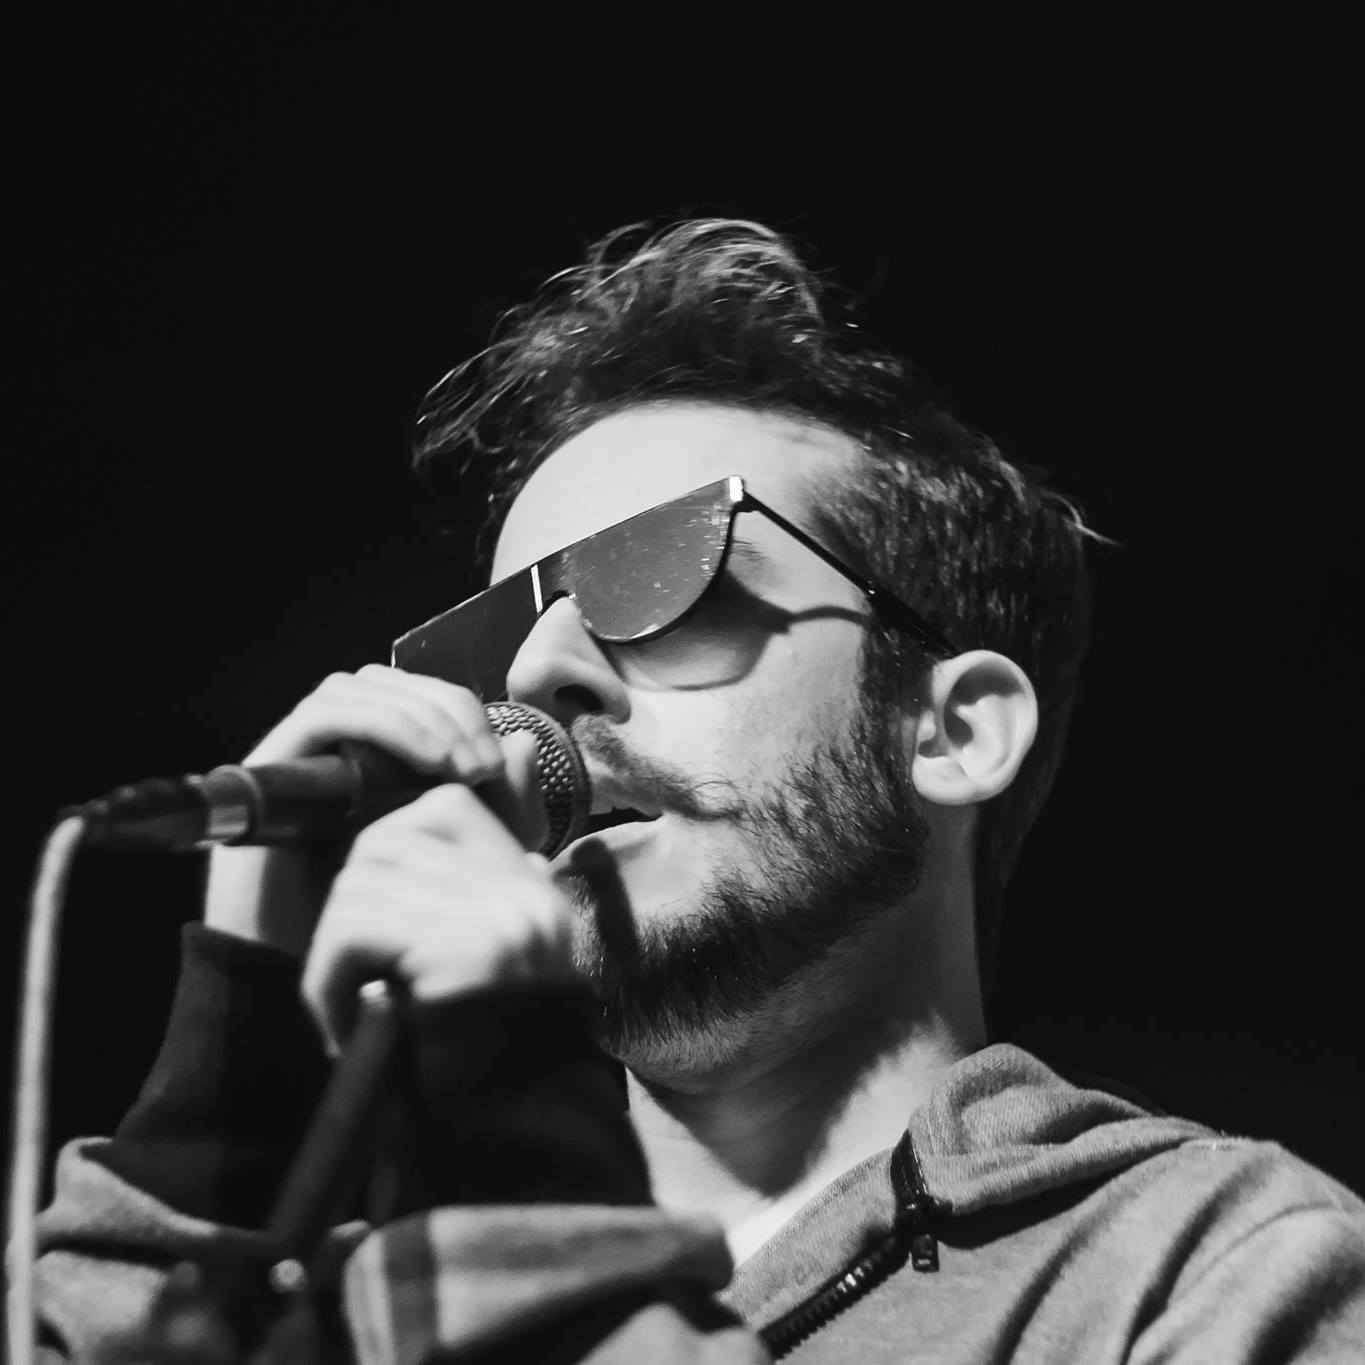 Imagem de divulgação oficial de Jimmy Andrade em preto e branco, de óculos, cantando.